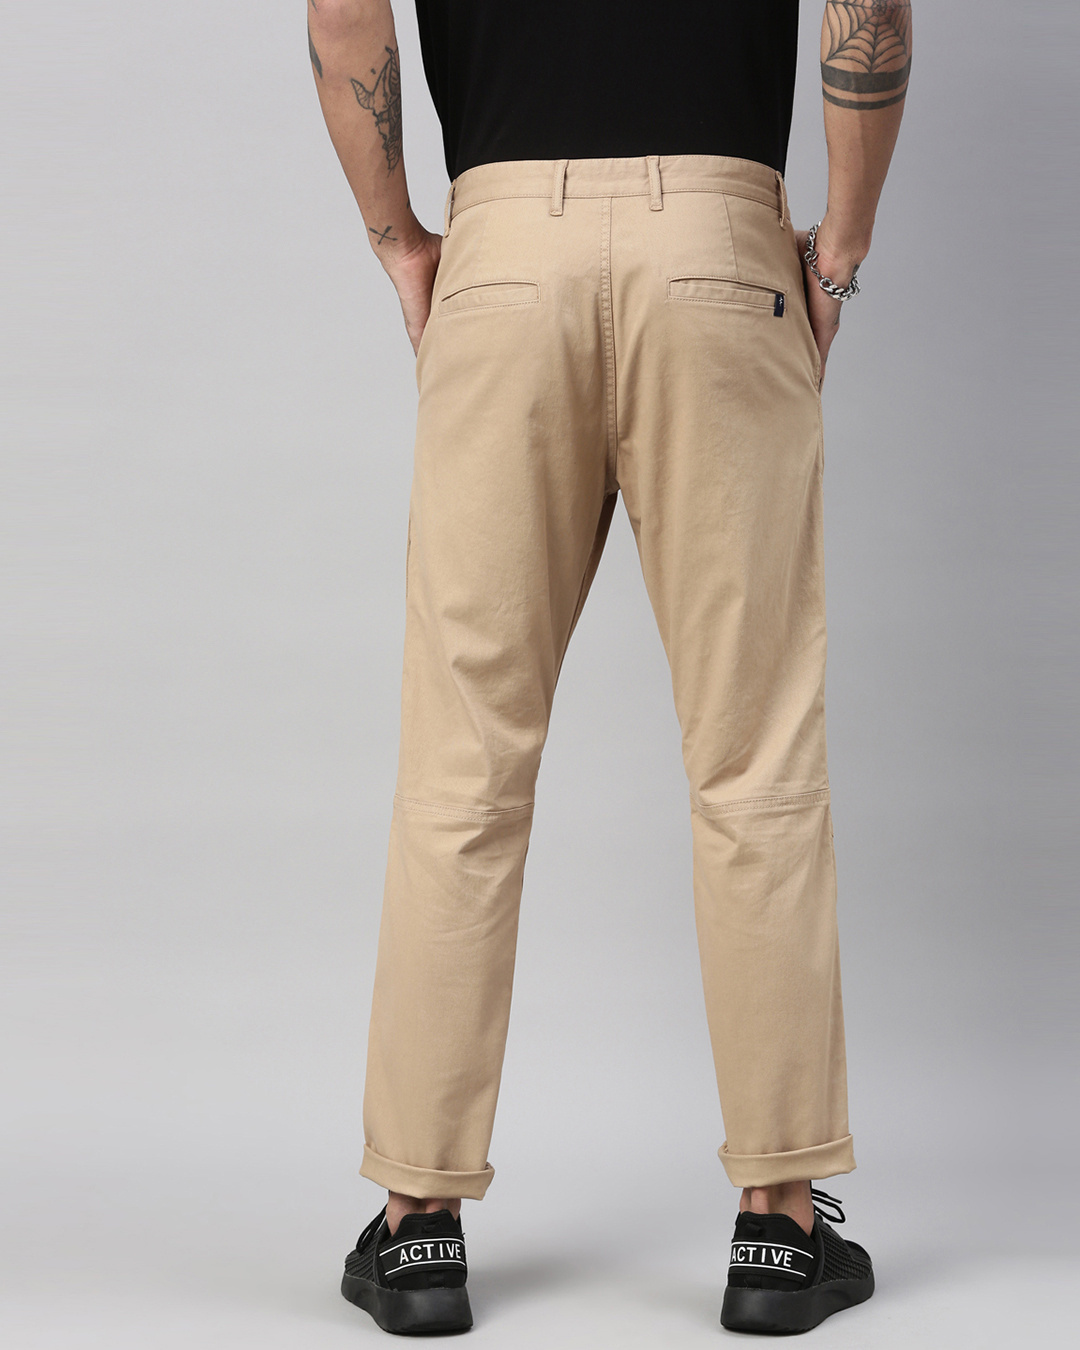 Neon Breakbounce Trousers - Buy Neon Breakbounce Trousers online in India